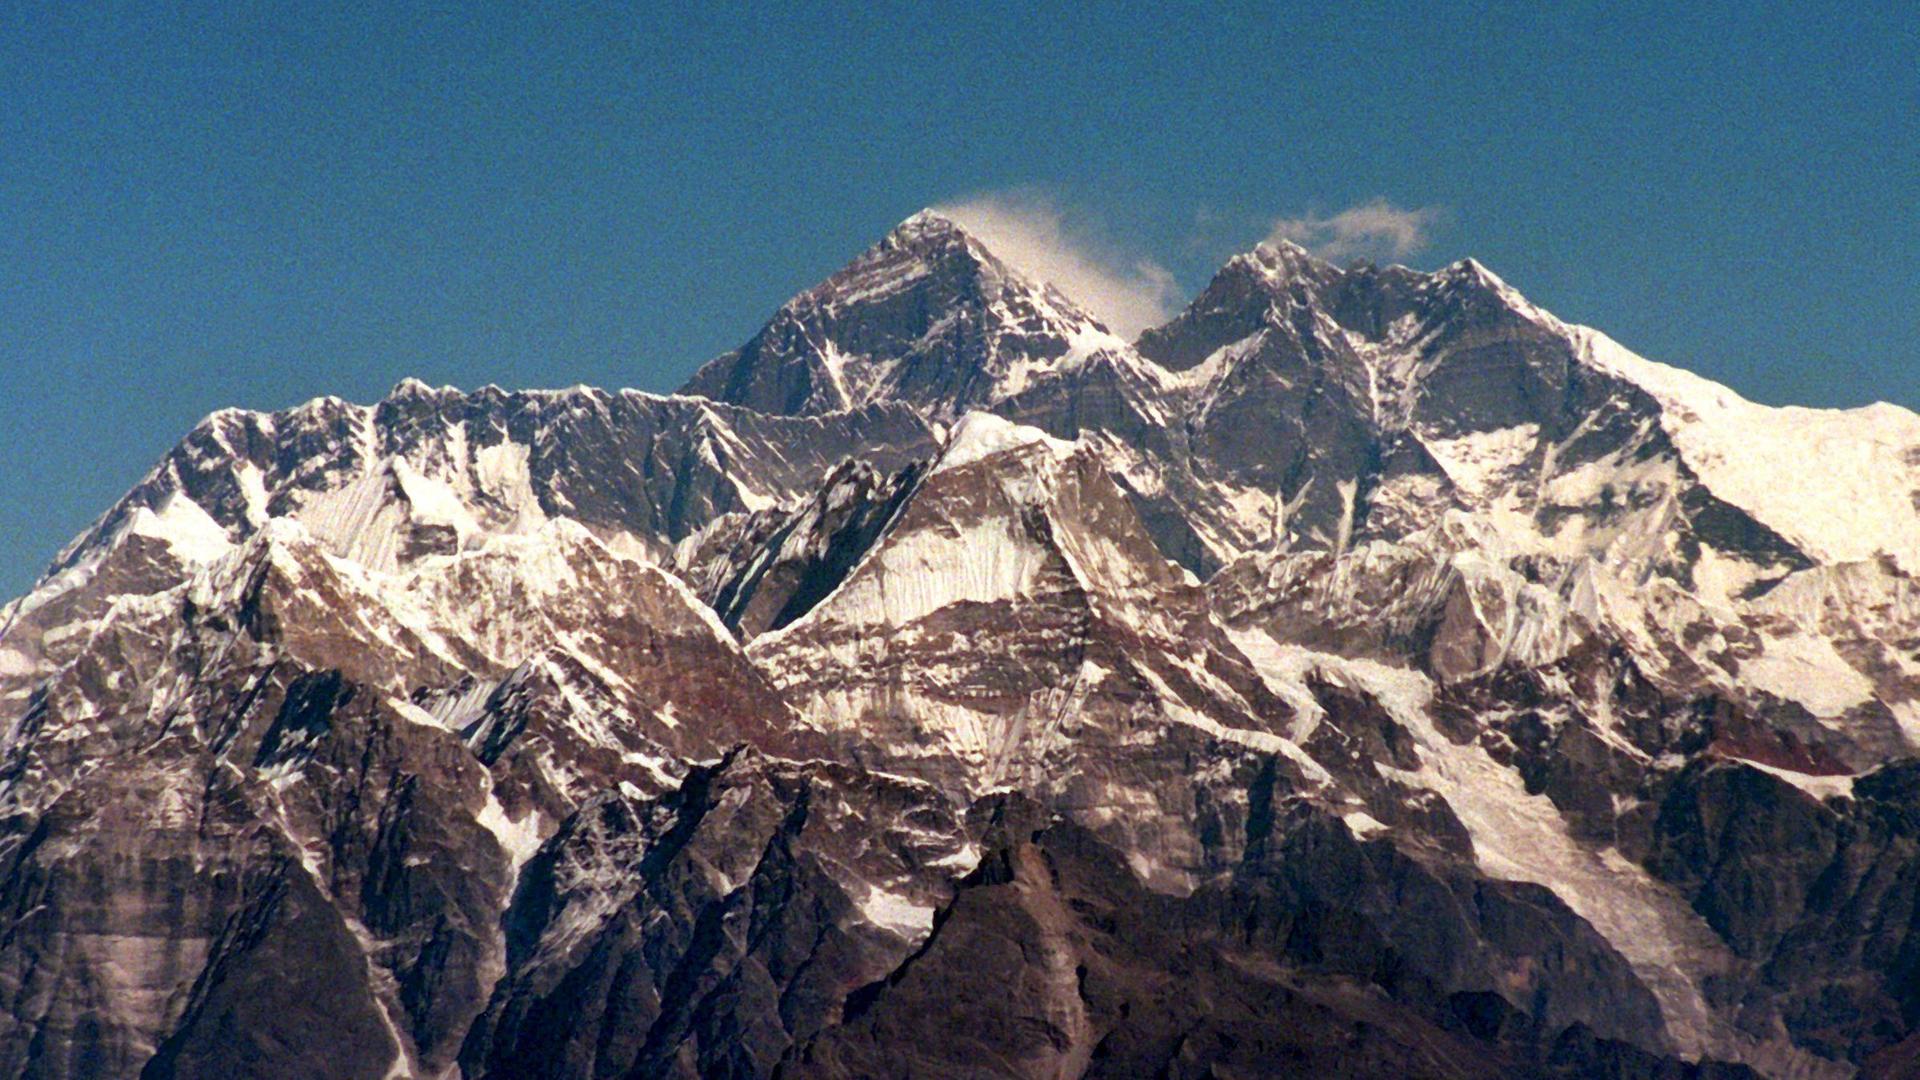 Blick auf das schneebedeckte Himalaja-Massiv, mit dem Mount Everest in der Mitte.